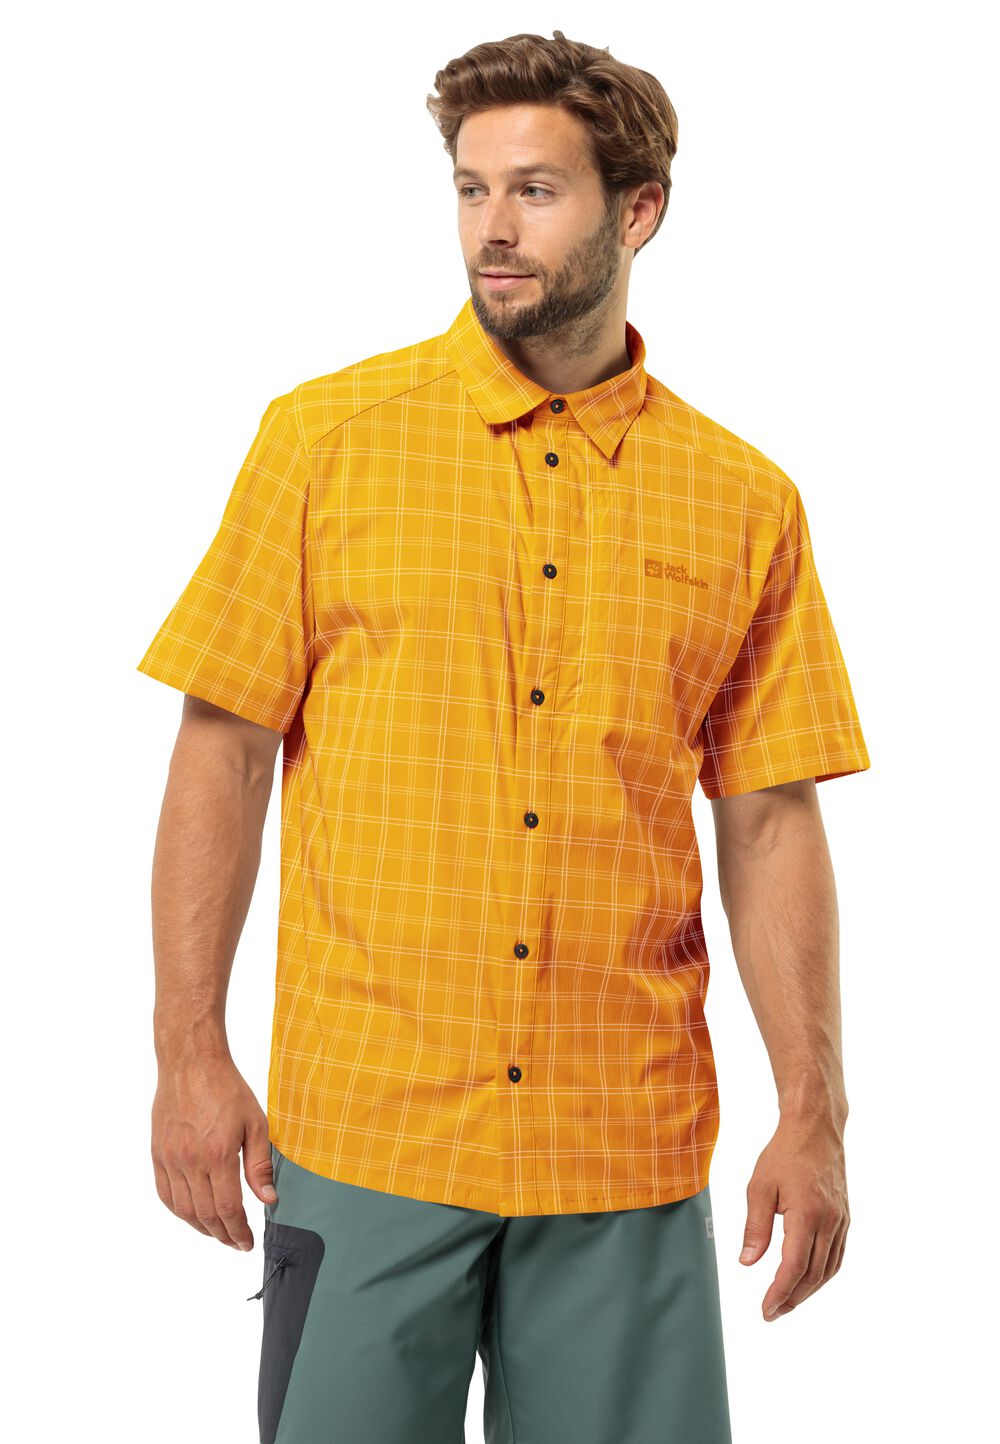 Jack Wolfskin Norbo S S Shirt Men Overhemd met korte mouwen Heren 3XL bruin curry check